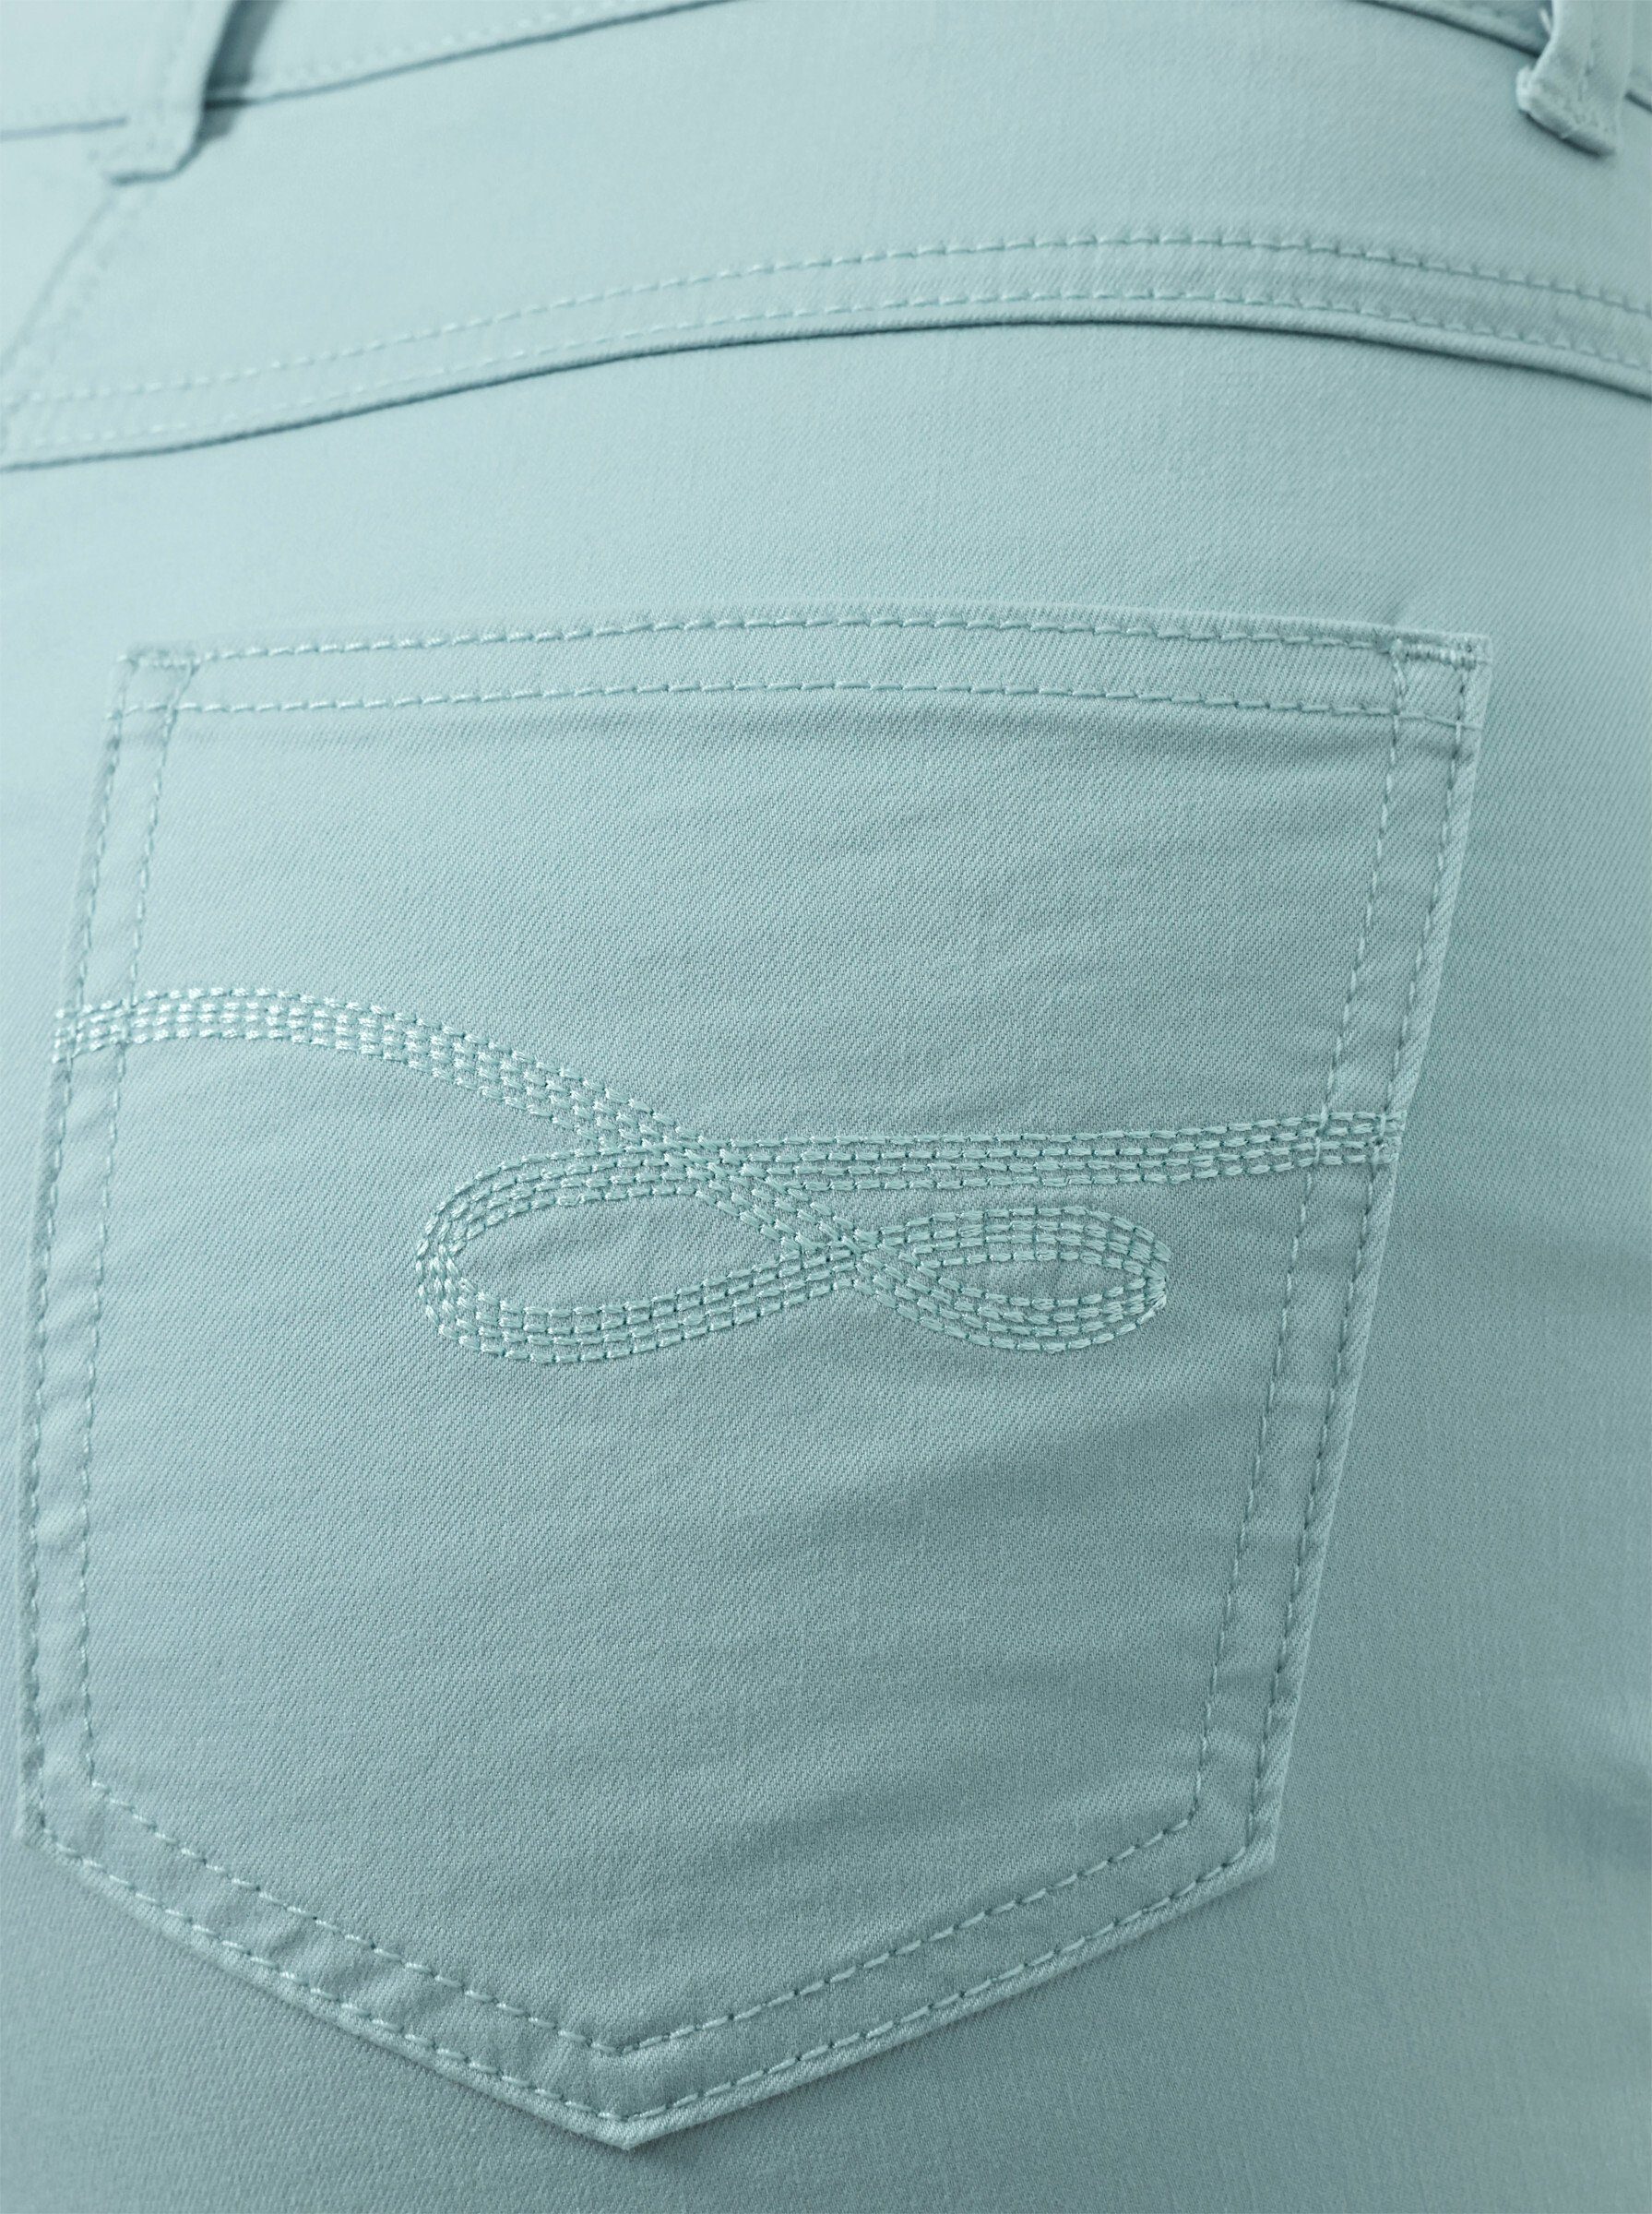 Jeans L mint Bequeme creation